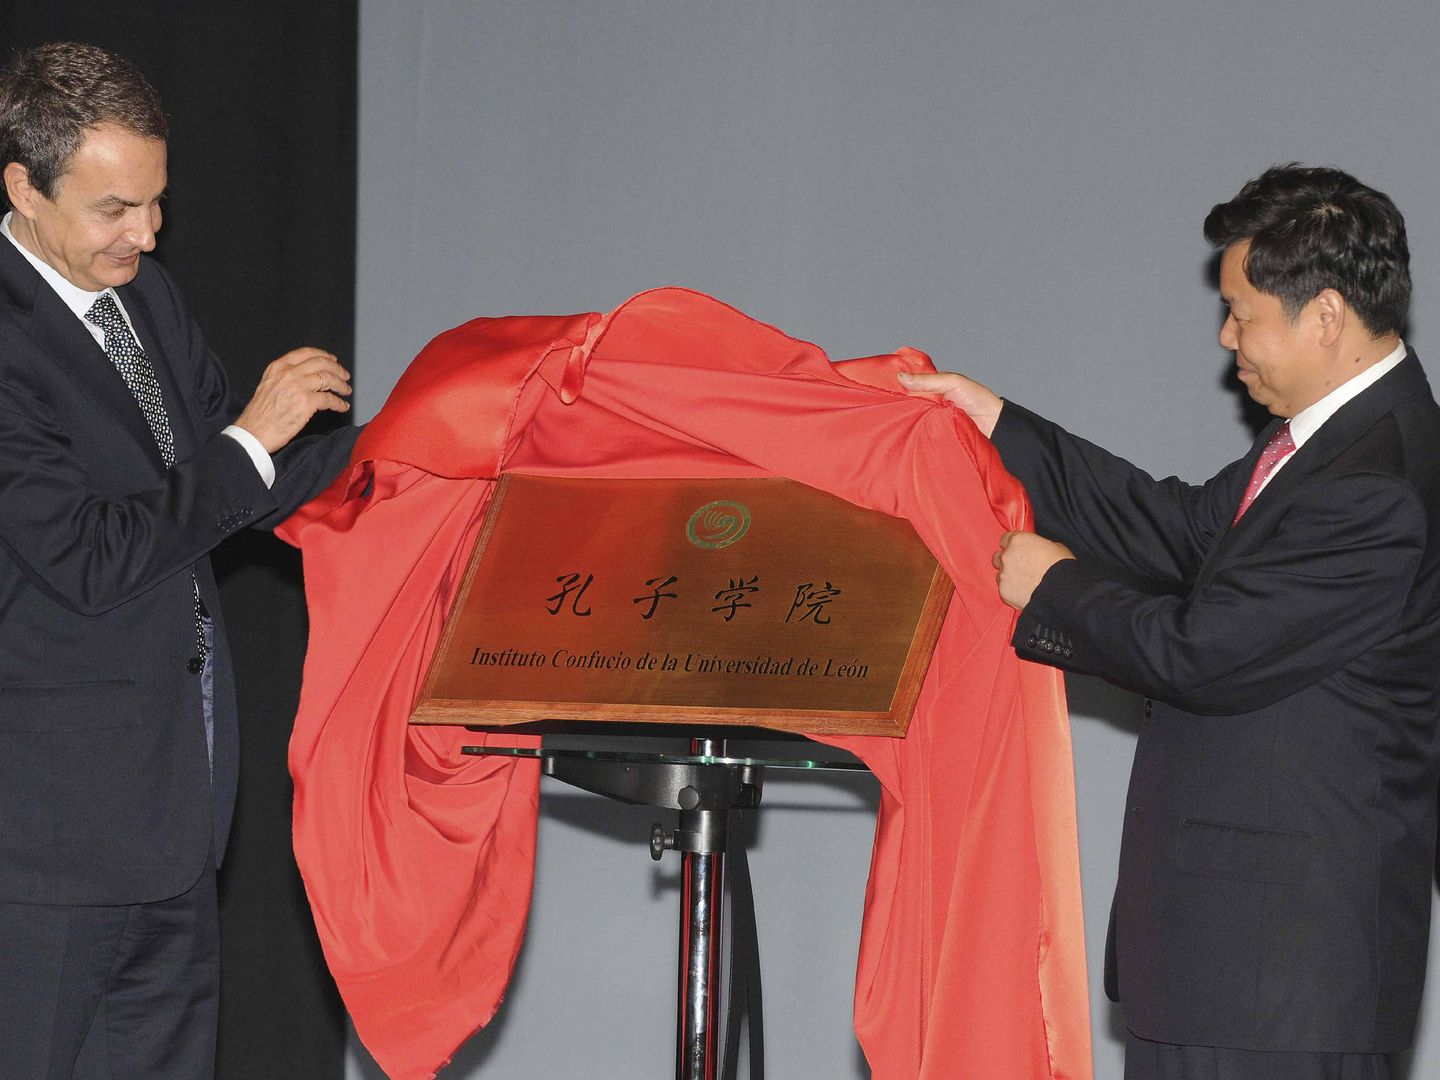 Zapatero, inaugurando un Instituto Confucio en León en 2011. (EFE/J. Casares)